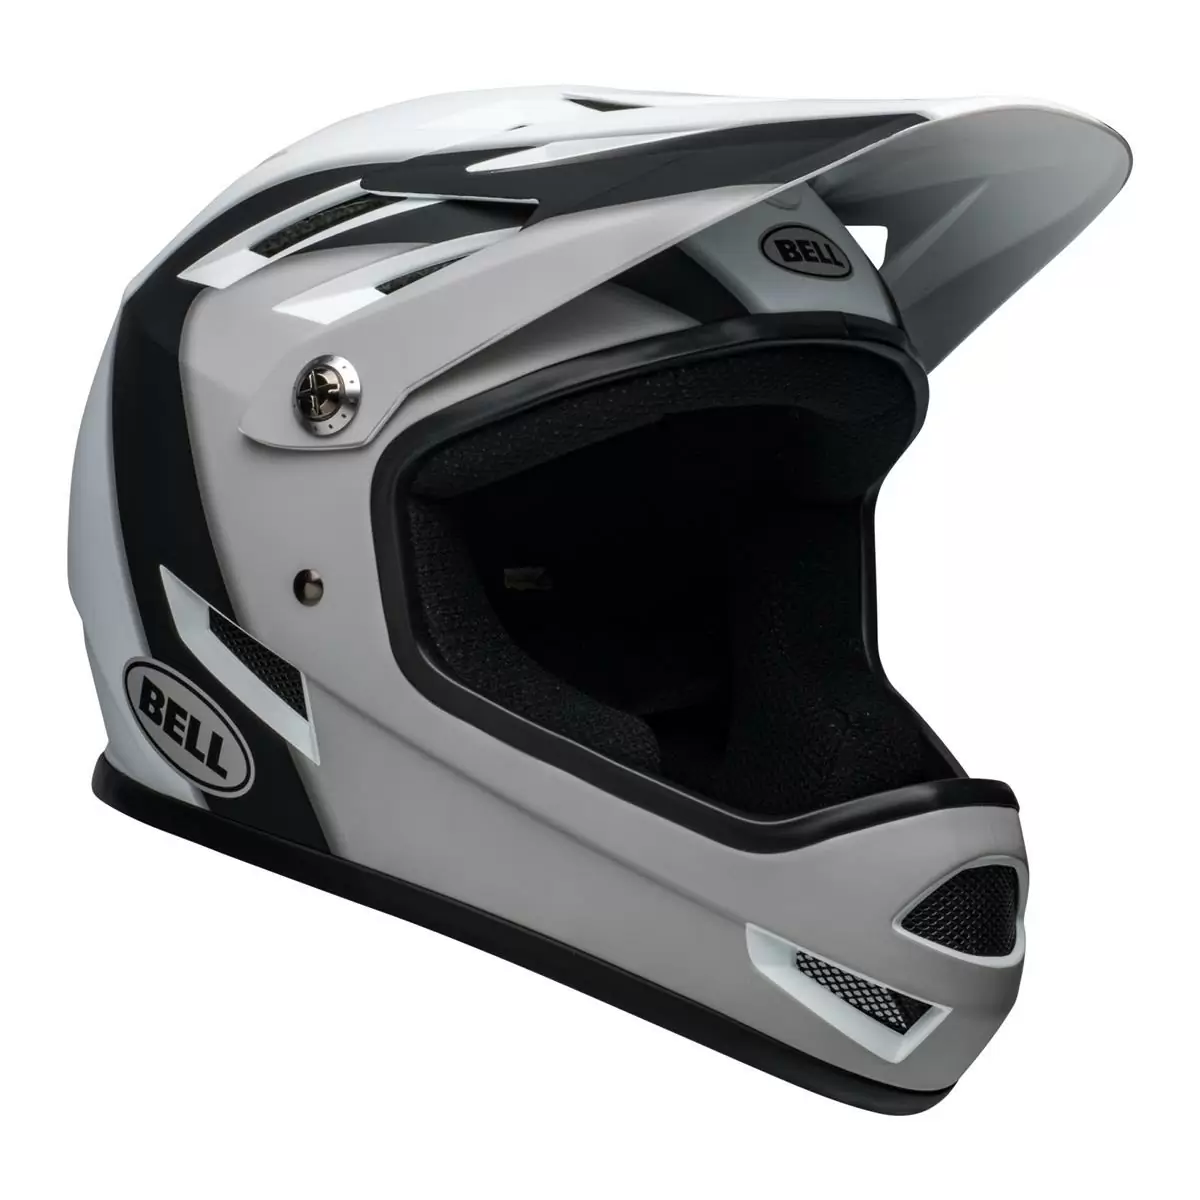 Sanction Full Face Helmet Black/White Size L (58-60cm) #1